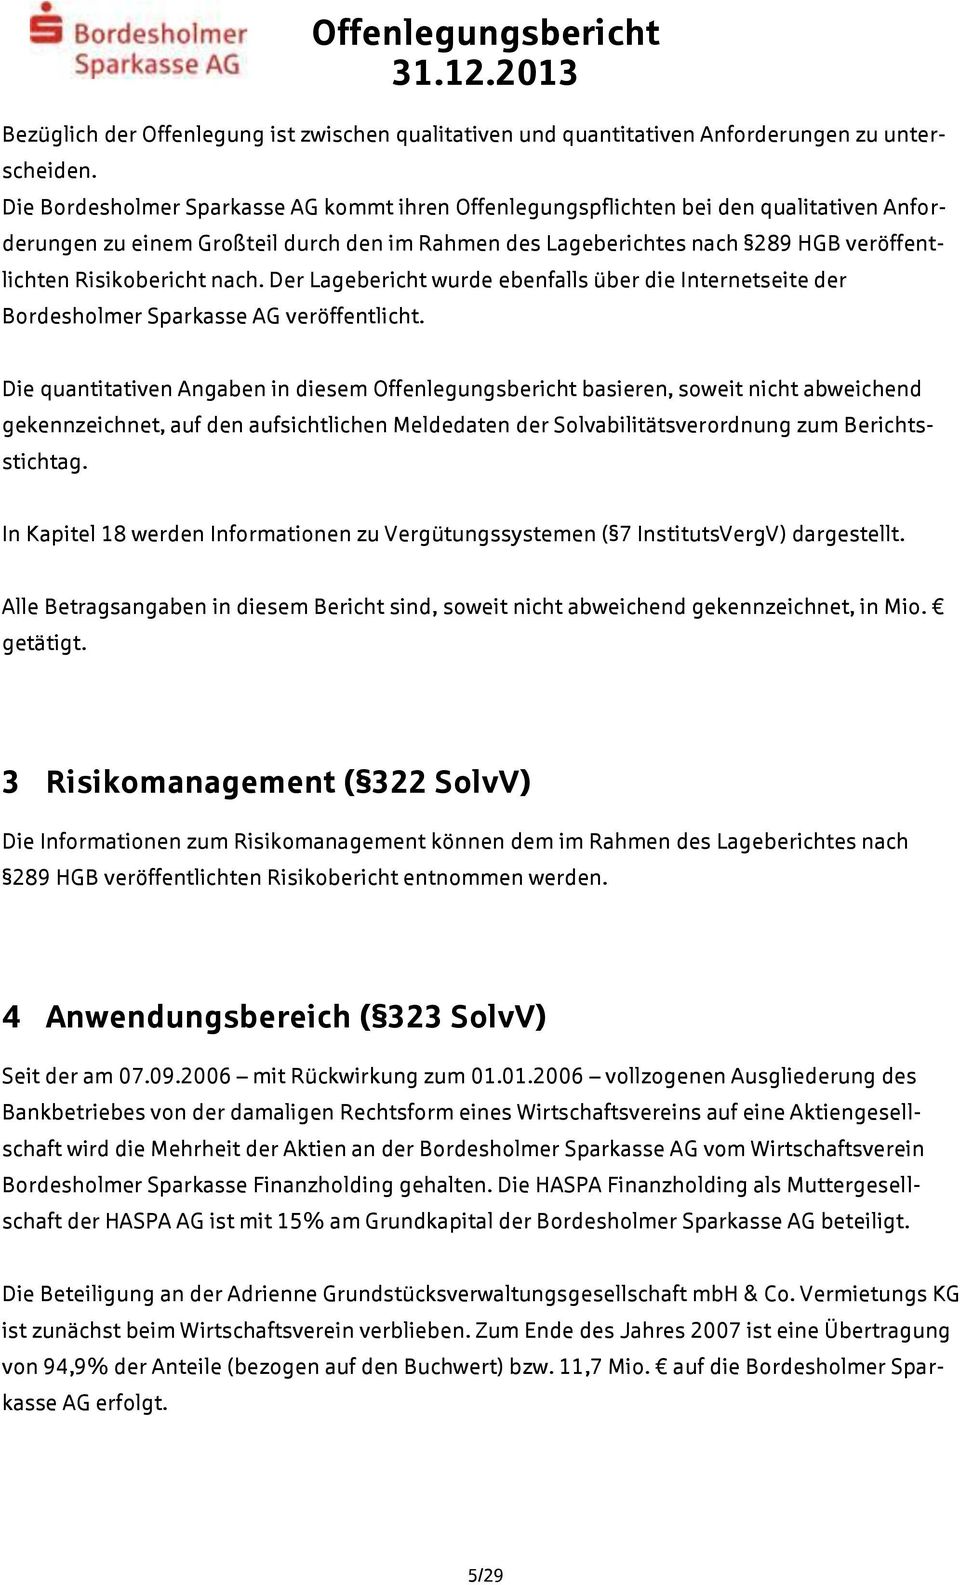 nach. Der Lagebericht wurde ebenfalls über die Internetseite der Bordesholmer Sparkasse AG veröffentlicht.